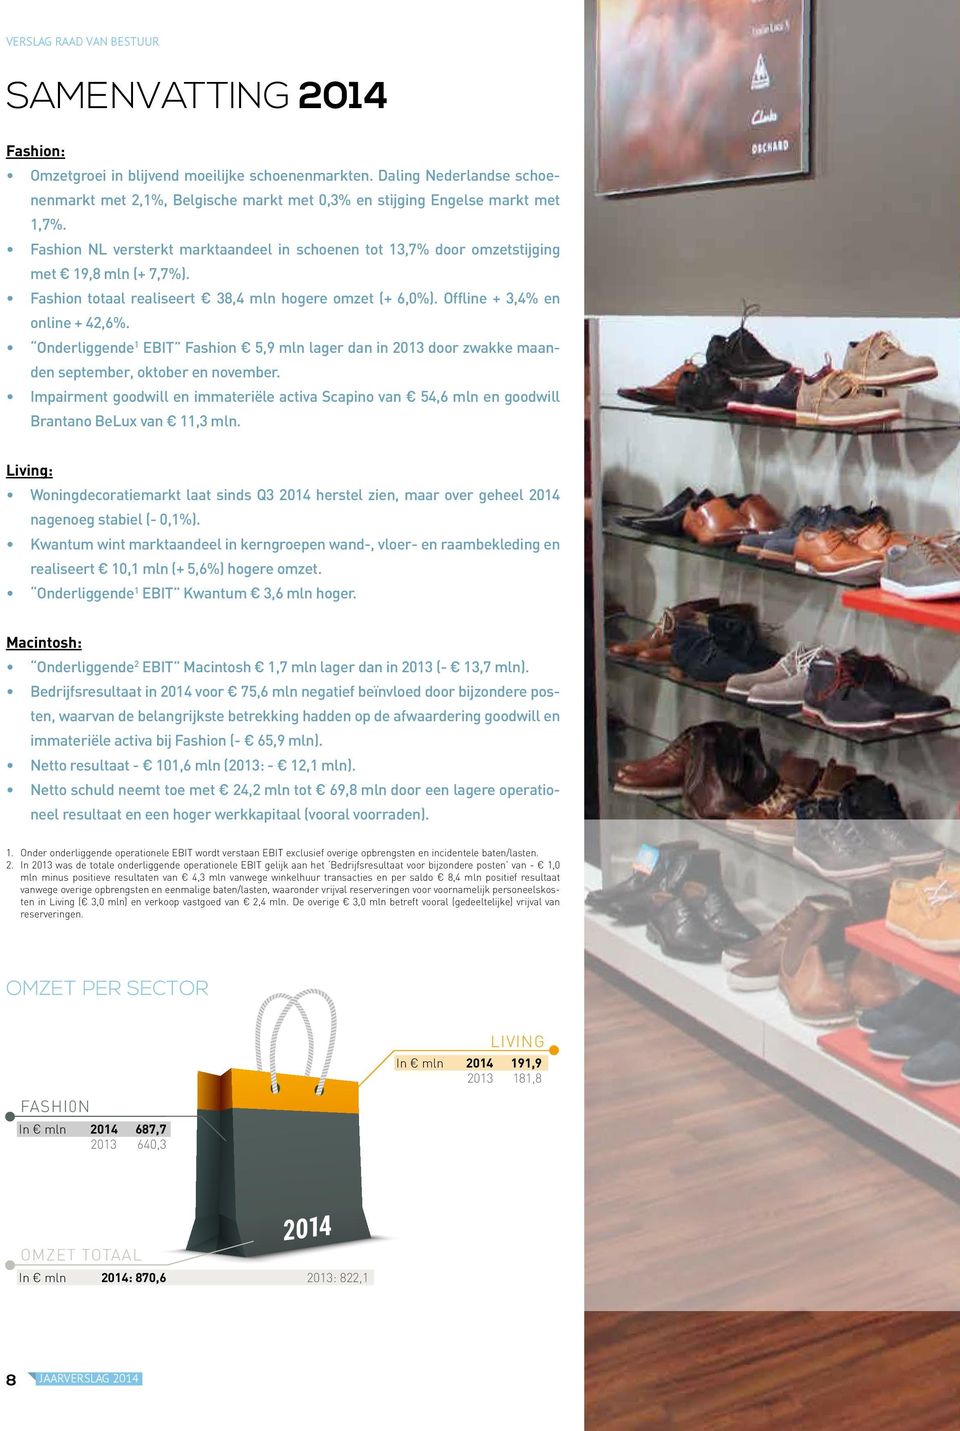 Fashion NL versterkt marktaandeel in schoenen tot 13,7% door omzetstijging met 19,8 mln (+ 7,7%). Fashion totaal realiseert 38,4 mln hogere omzet (+ 6,0%). Offline + 3,4% en online + 42,6%.